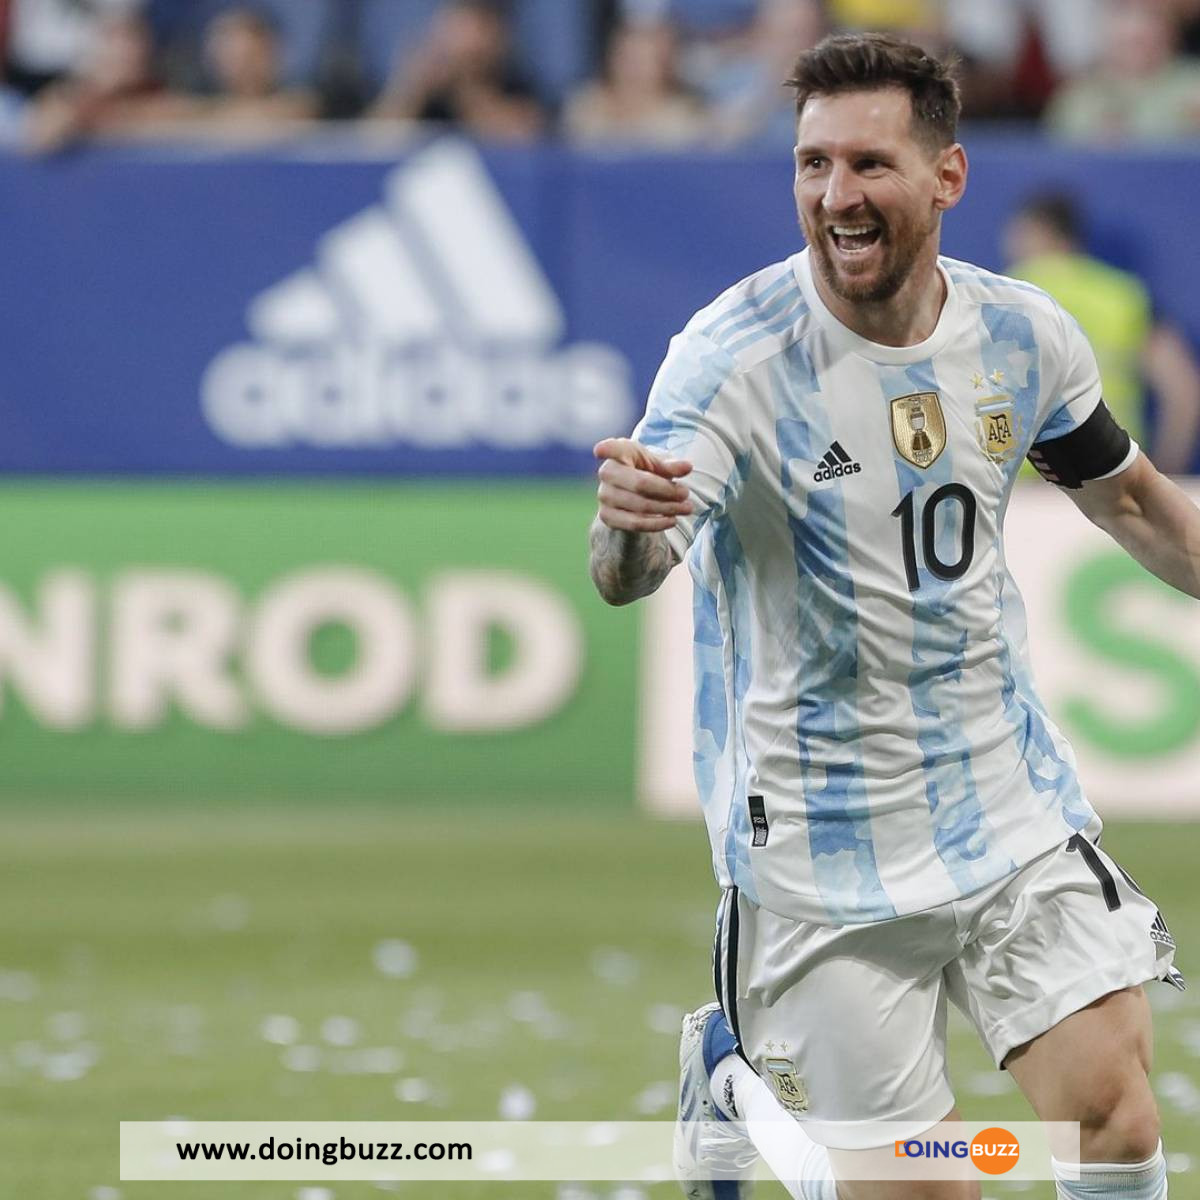 Lionel Messi troisieme meilleur buteur histoire football - Lionel Messi a été épinglé pour l'utilisation de son jet privé